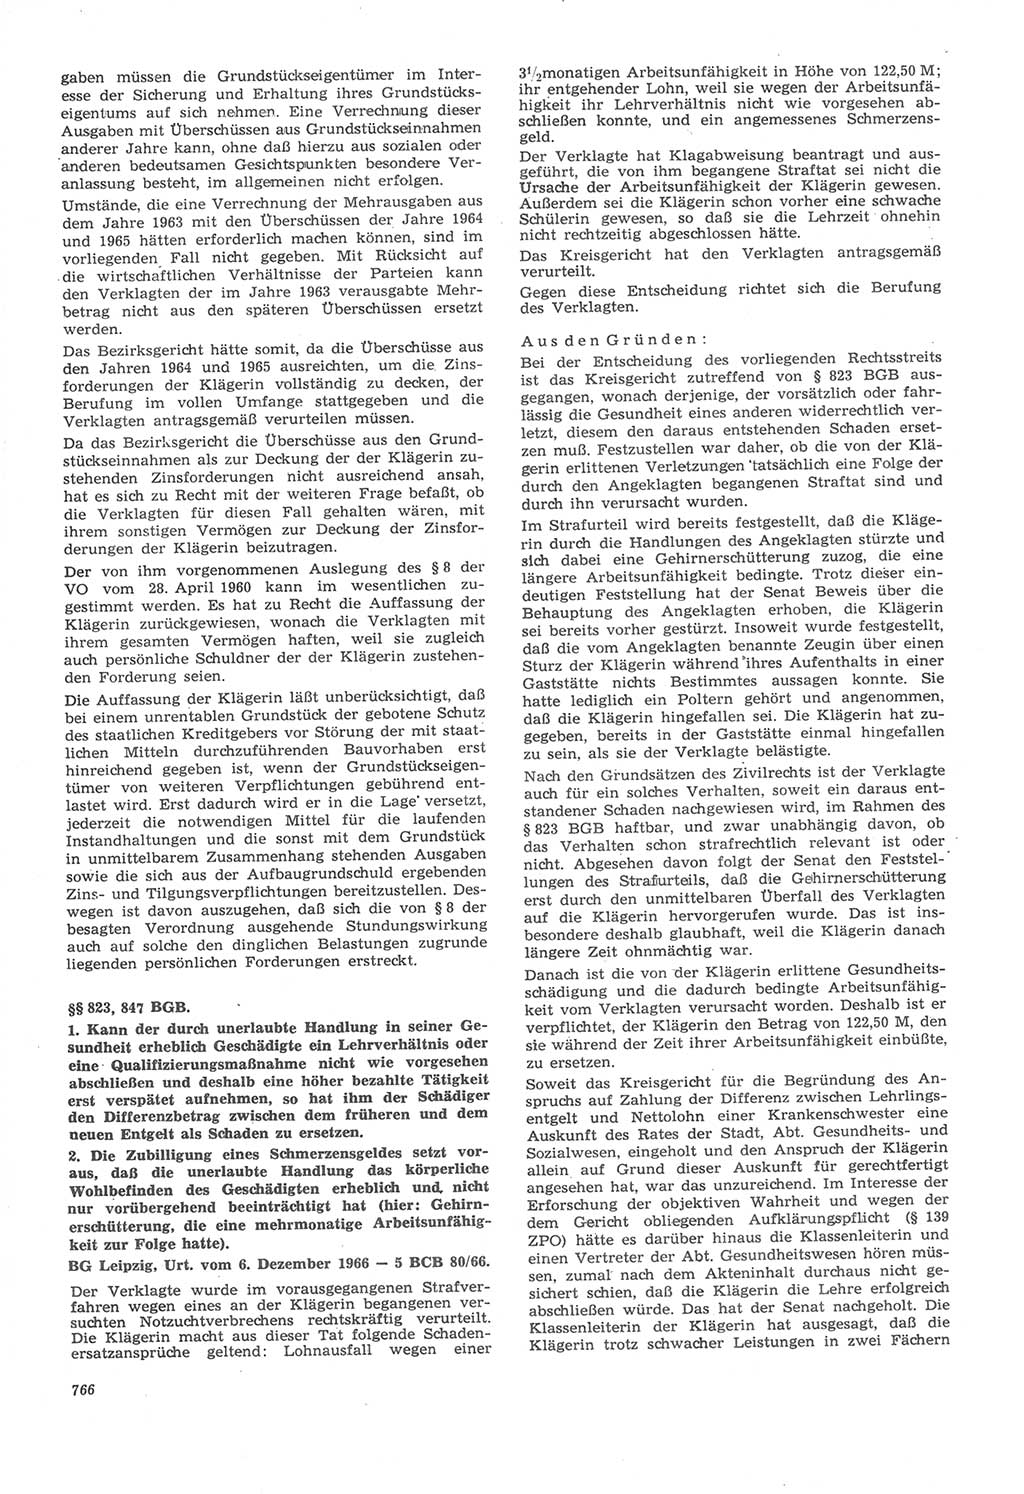 Neue Justiz (NJ), Zeitschrift für Recht und Rechtswissenschaft [Deutsche Demokratische Republik (DDR)], 22. Jahrgang 1968, Seite 766 (NJ DDR 1968, S. 766)